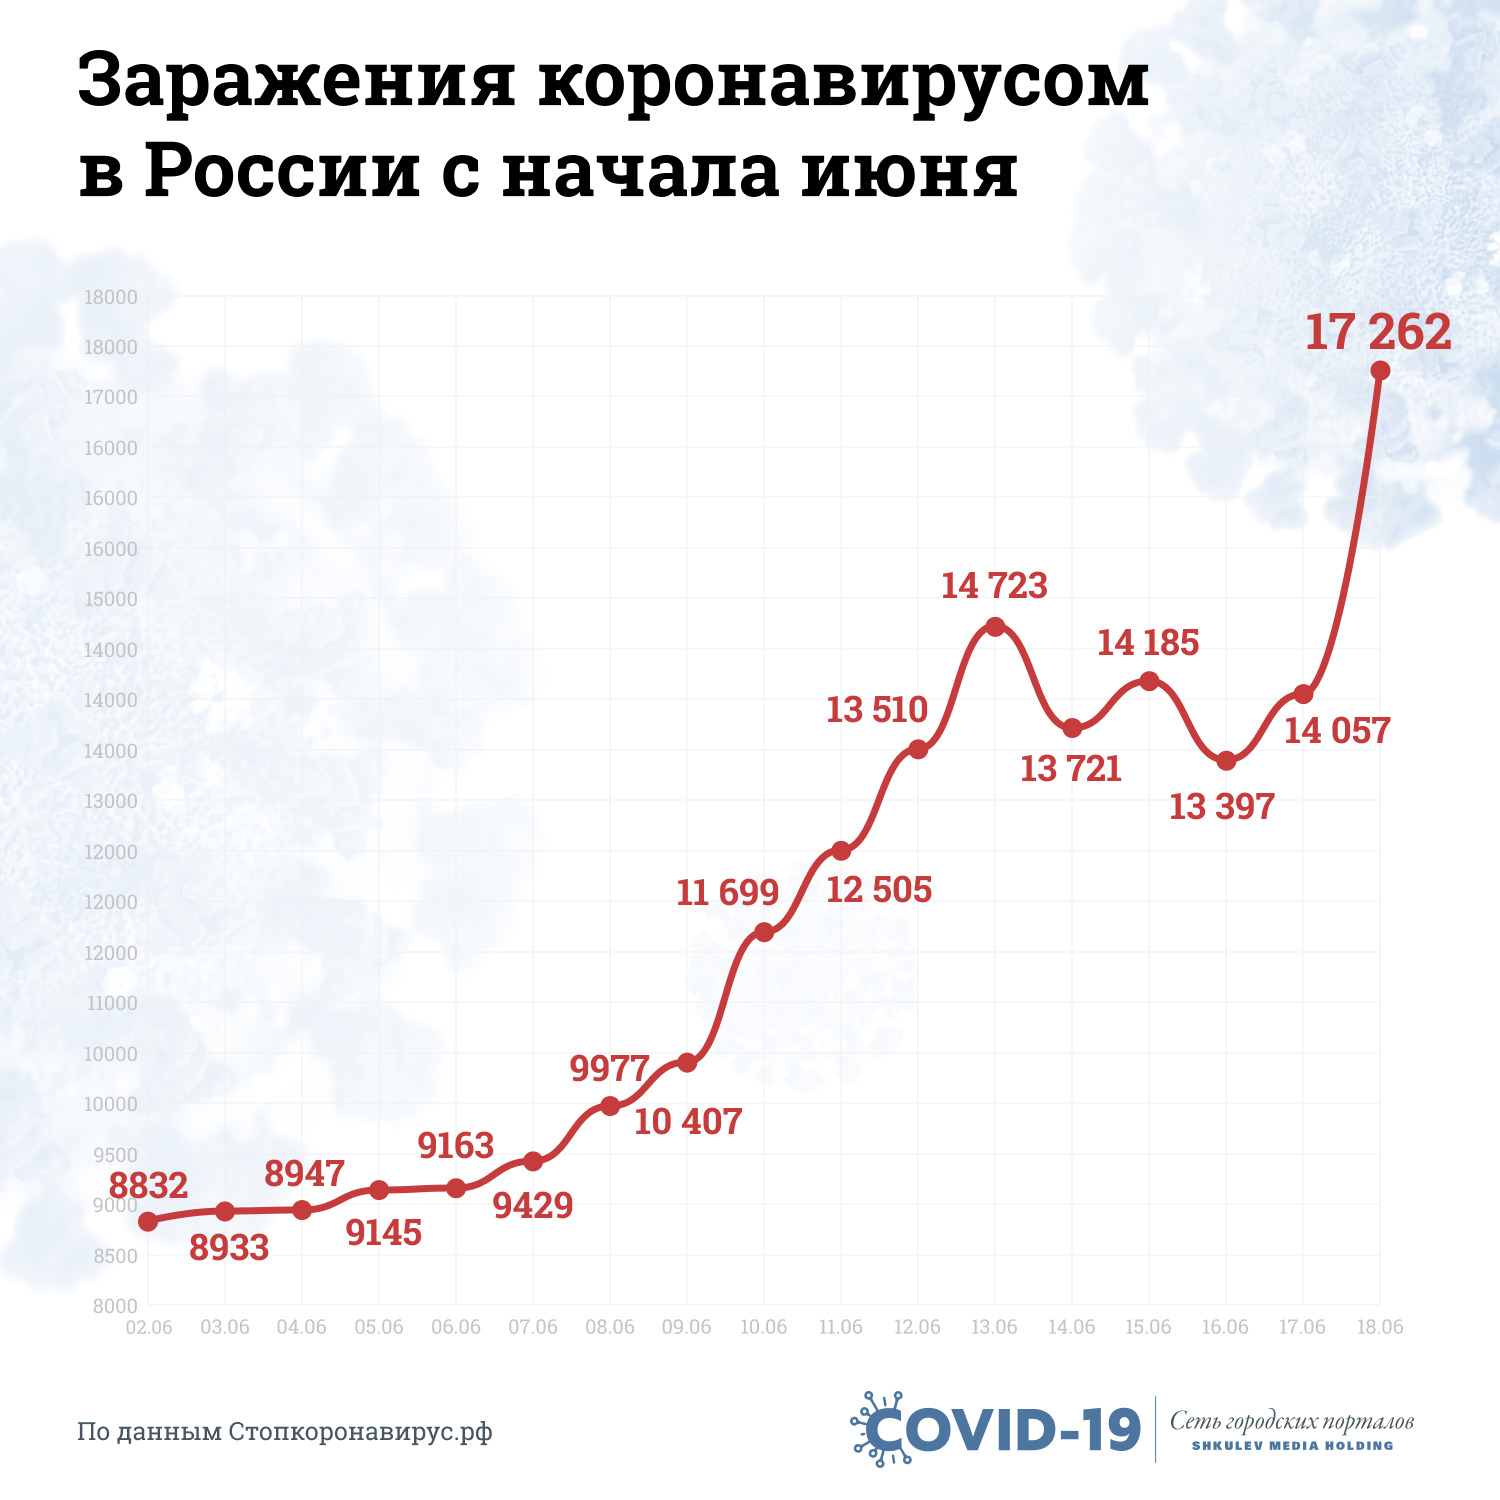 Июньская статистика заражений коронавирусом в России выглядит так